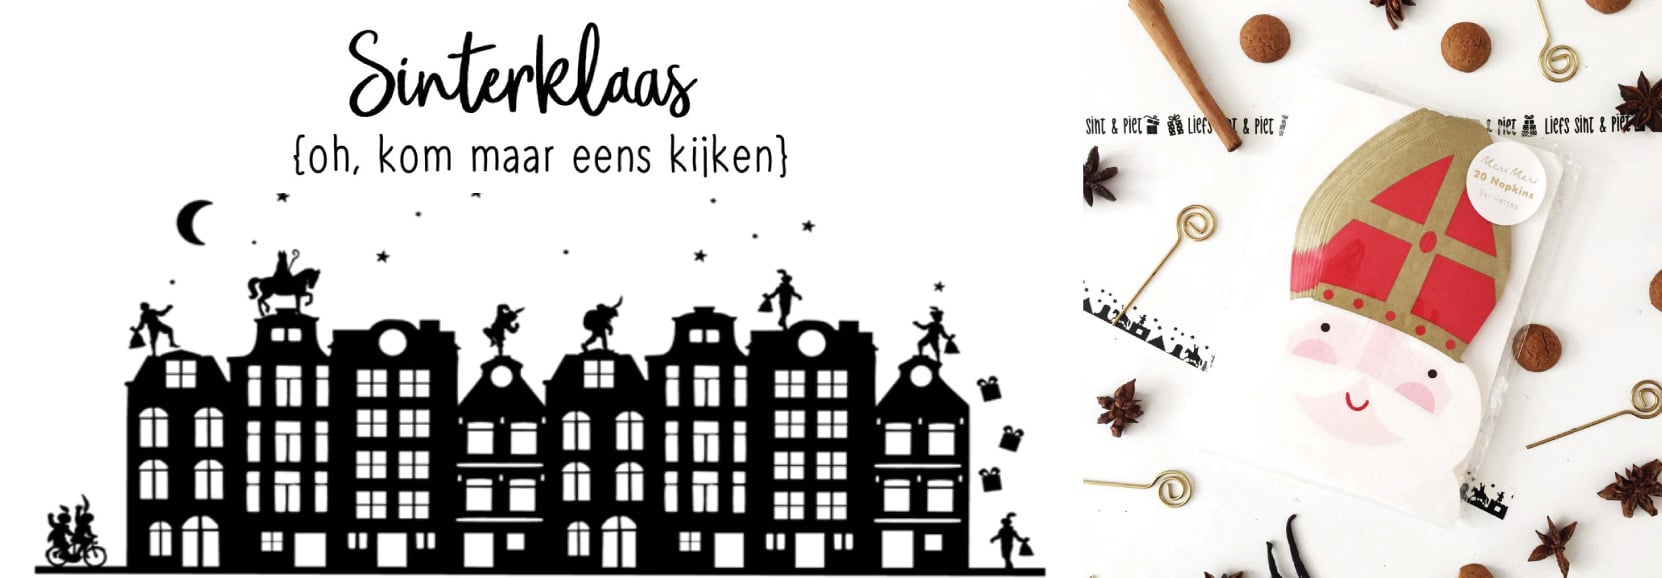 Cadeau blaas gat Dreigend Sinterklaas versiering | Jetjesenjobjes.nl - Jetjes & Jobjes